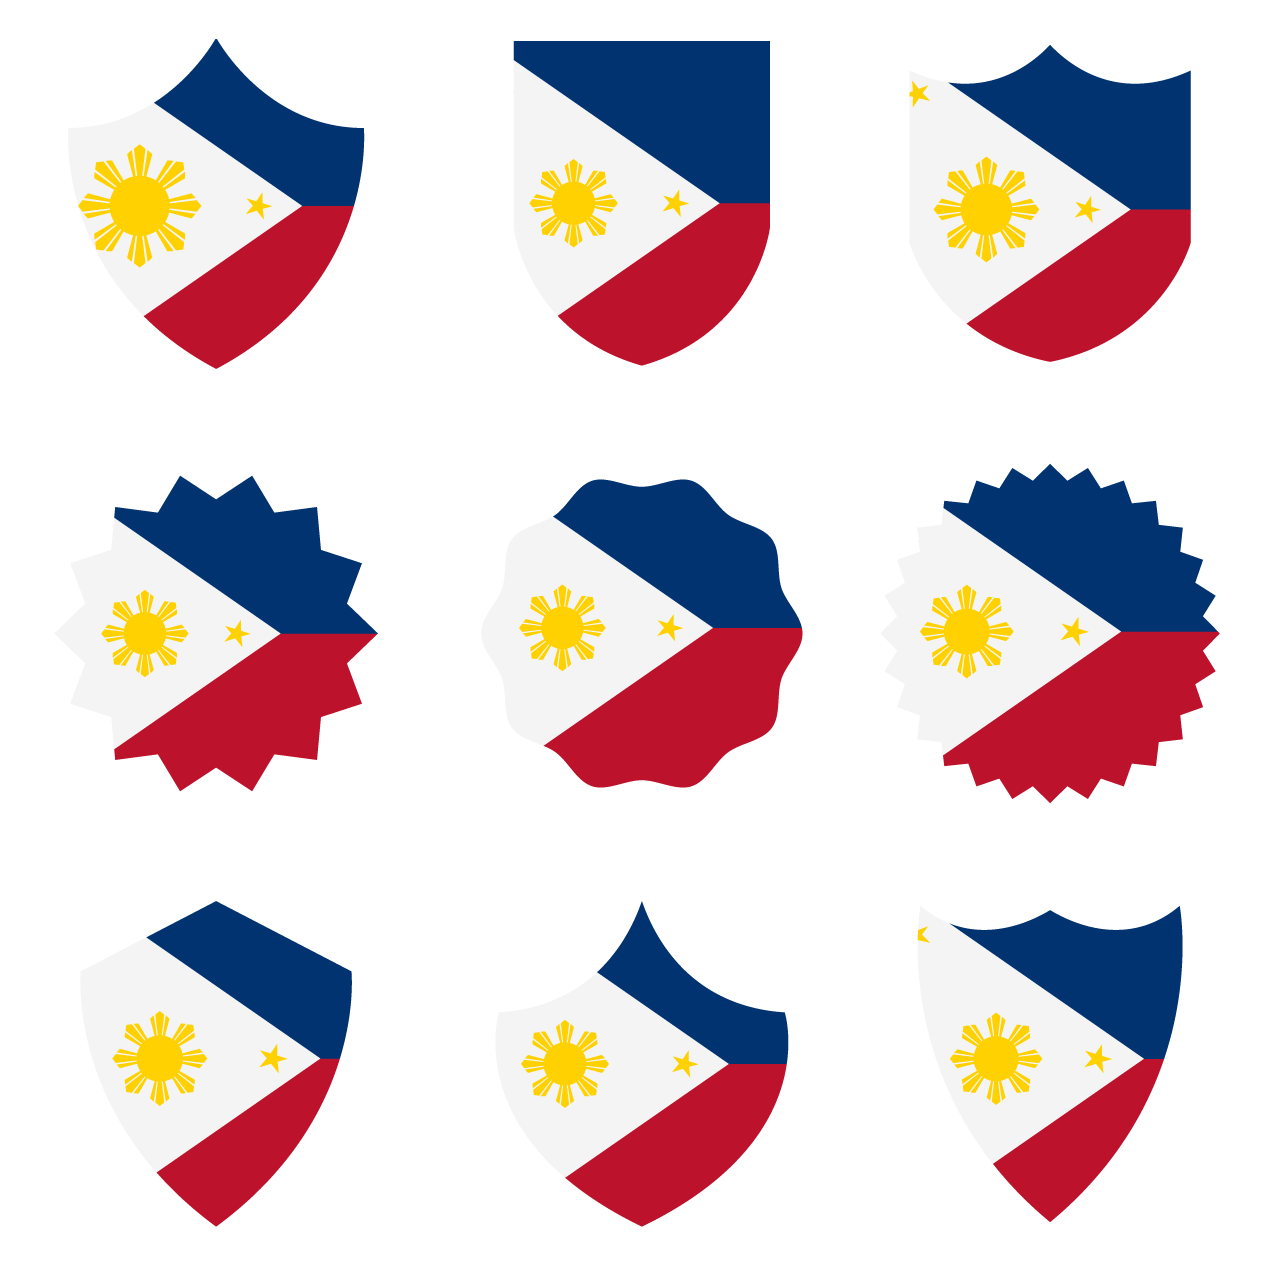 Flat design philippine flag set cartoon illustration image transparent background png